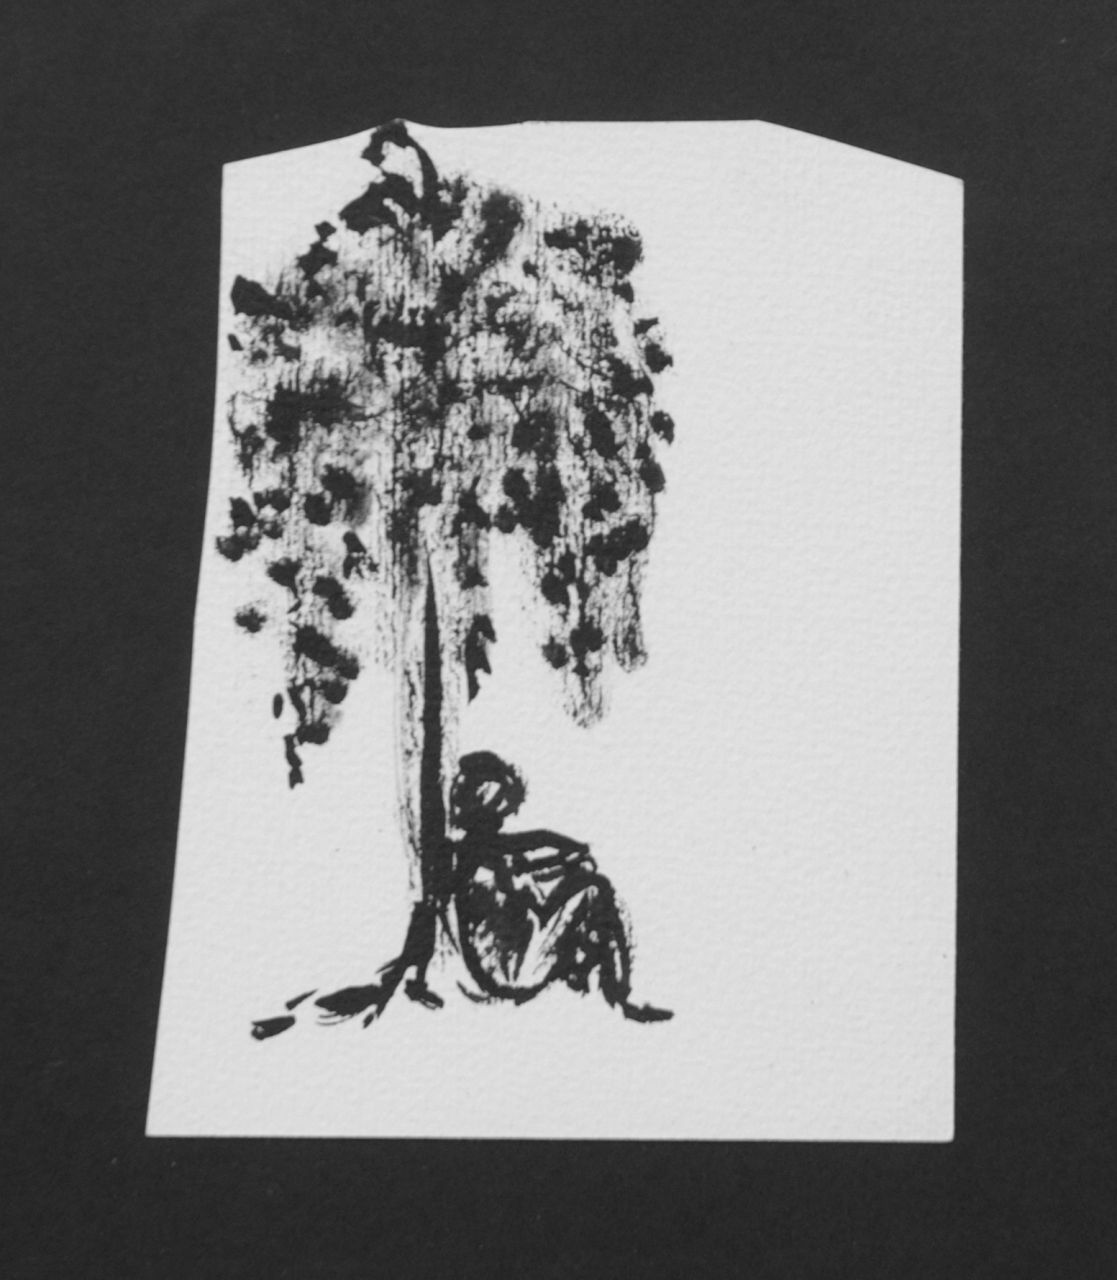 Oranje-Nassau (Prinses Beatrix) B.W.A. van | Beatrix Wilhelmina Armgard van Oranje-Nassau (Prinses Beatrix), Slapende man onder boom, potlood en Oost-Indische inkt op papier 12,2 x 9,7 cm, te dateren augustus 1960